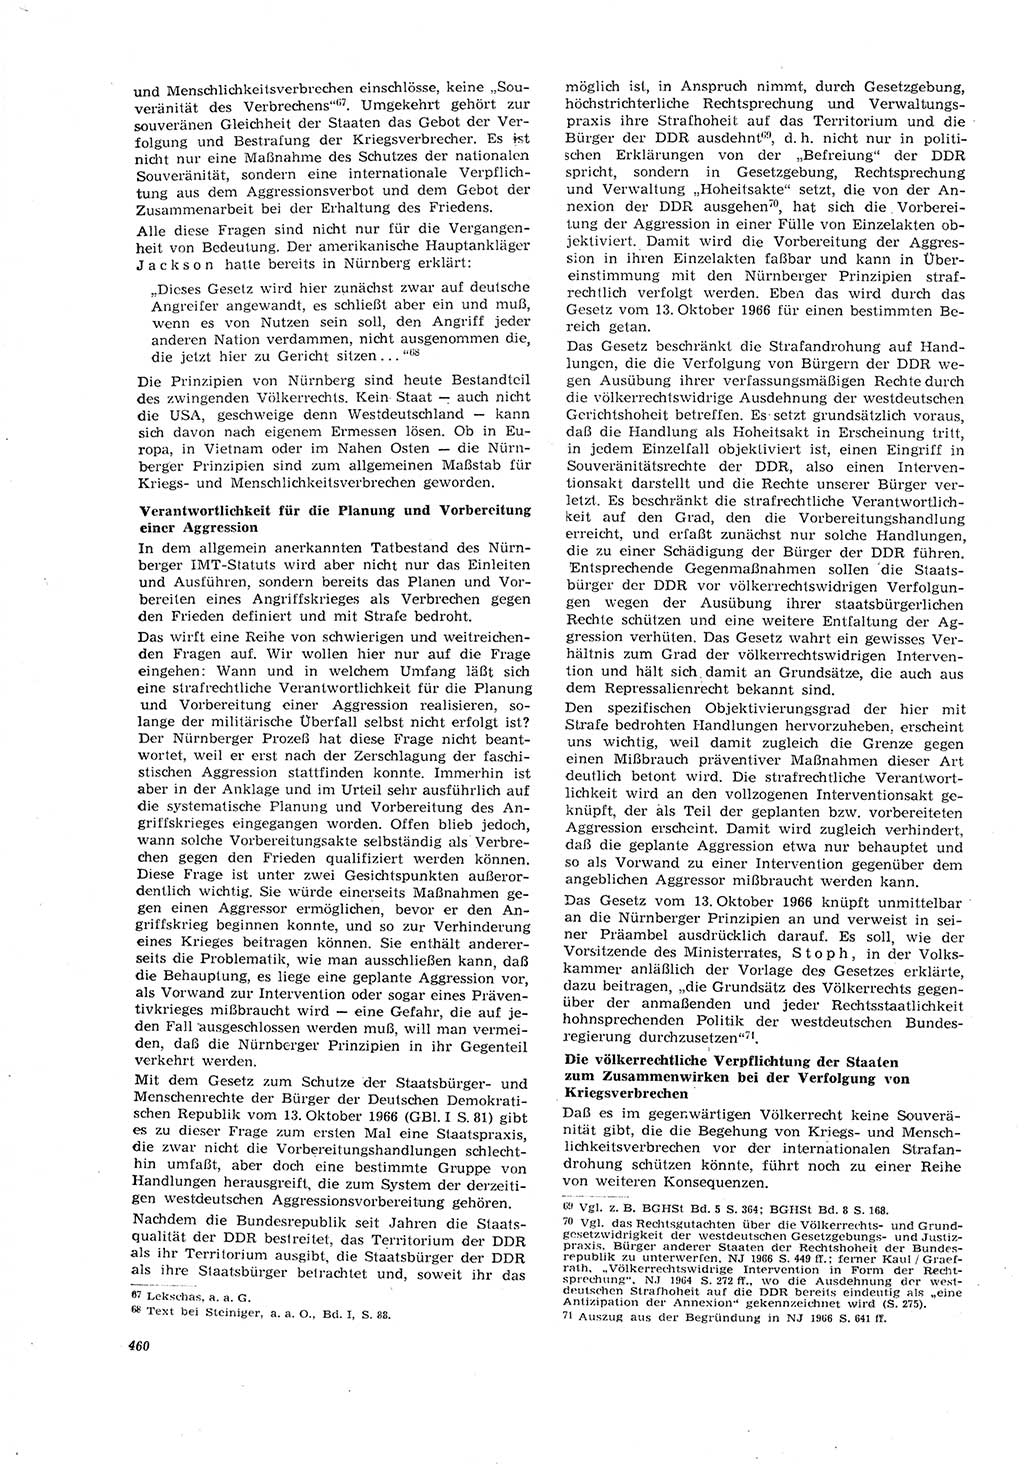 Neue Justiz (NJ), Zeitschrift für Recht und Rechtswissenschaft [Deutsche Demokratische Republik (DDR)], 21. Jahrgang 1967, Seite 460 (NJ DDR 1967, S. 460)